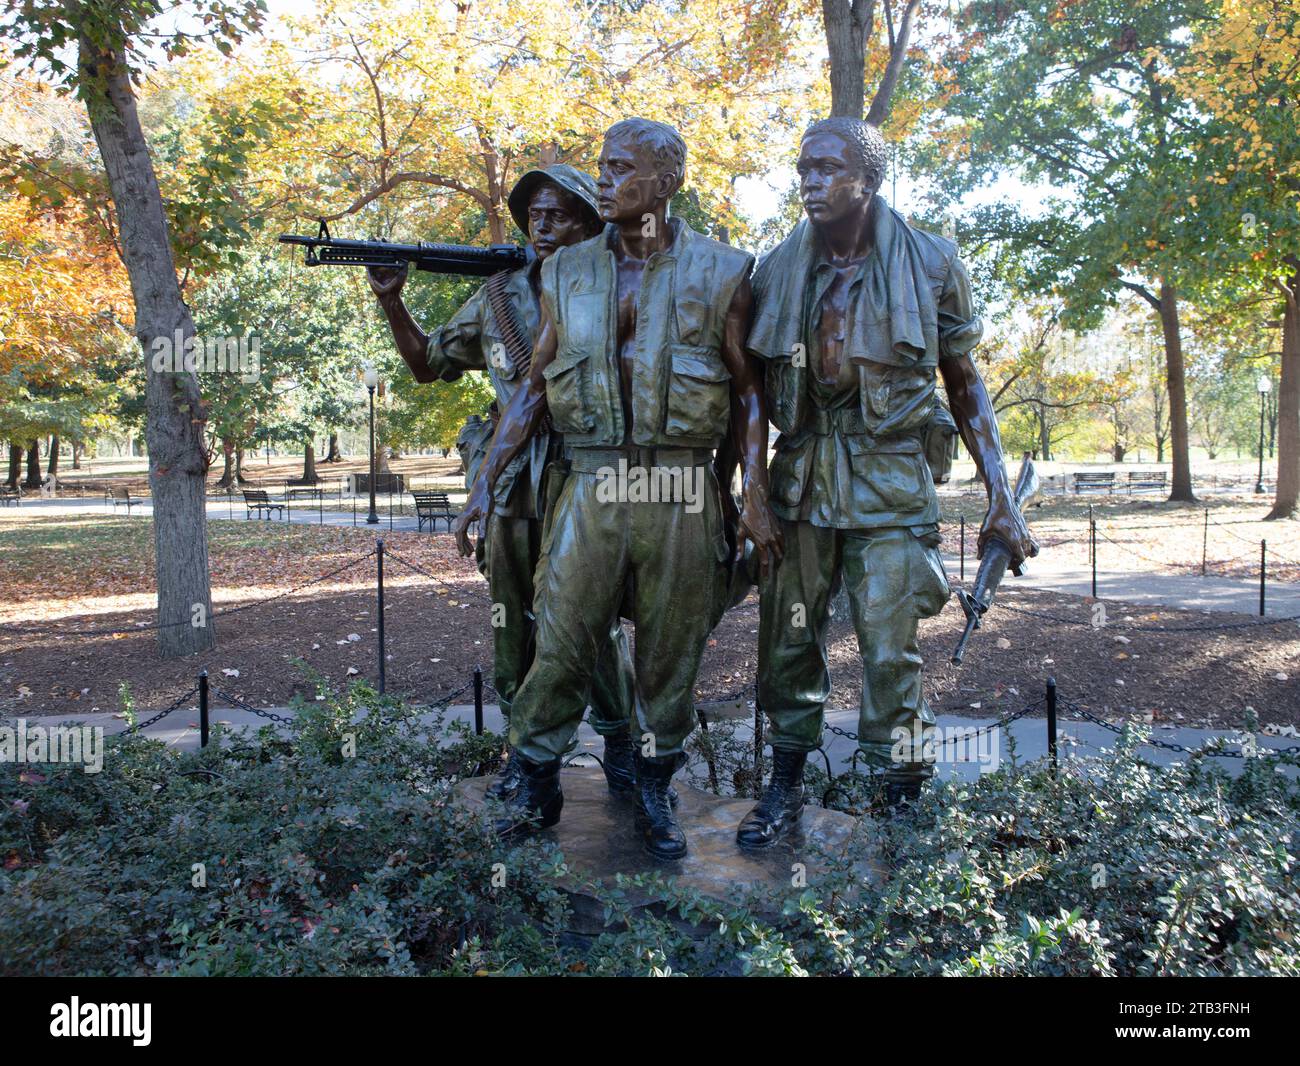 Das Vietnam Veterans Memorial, auch Vietnam Memorial genannt, ist eine US-amerikanische Gedenkstätte in Washington, D.C. Stockfoto